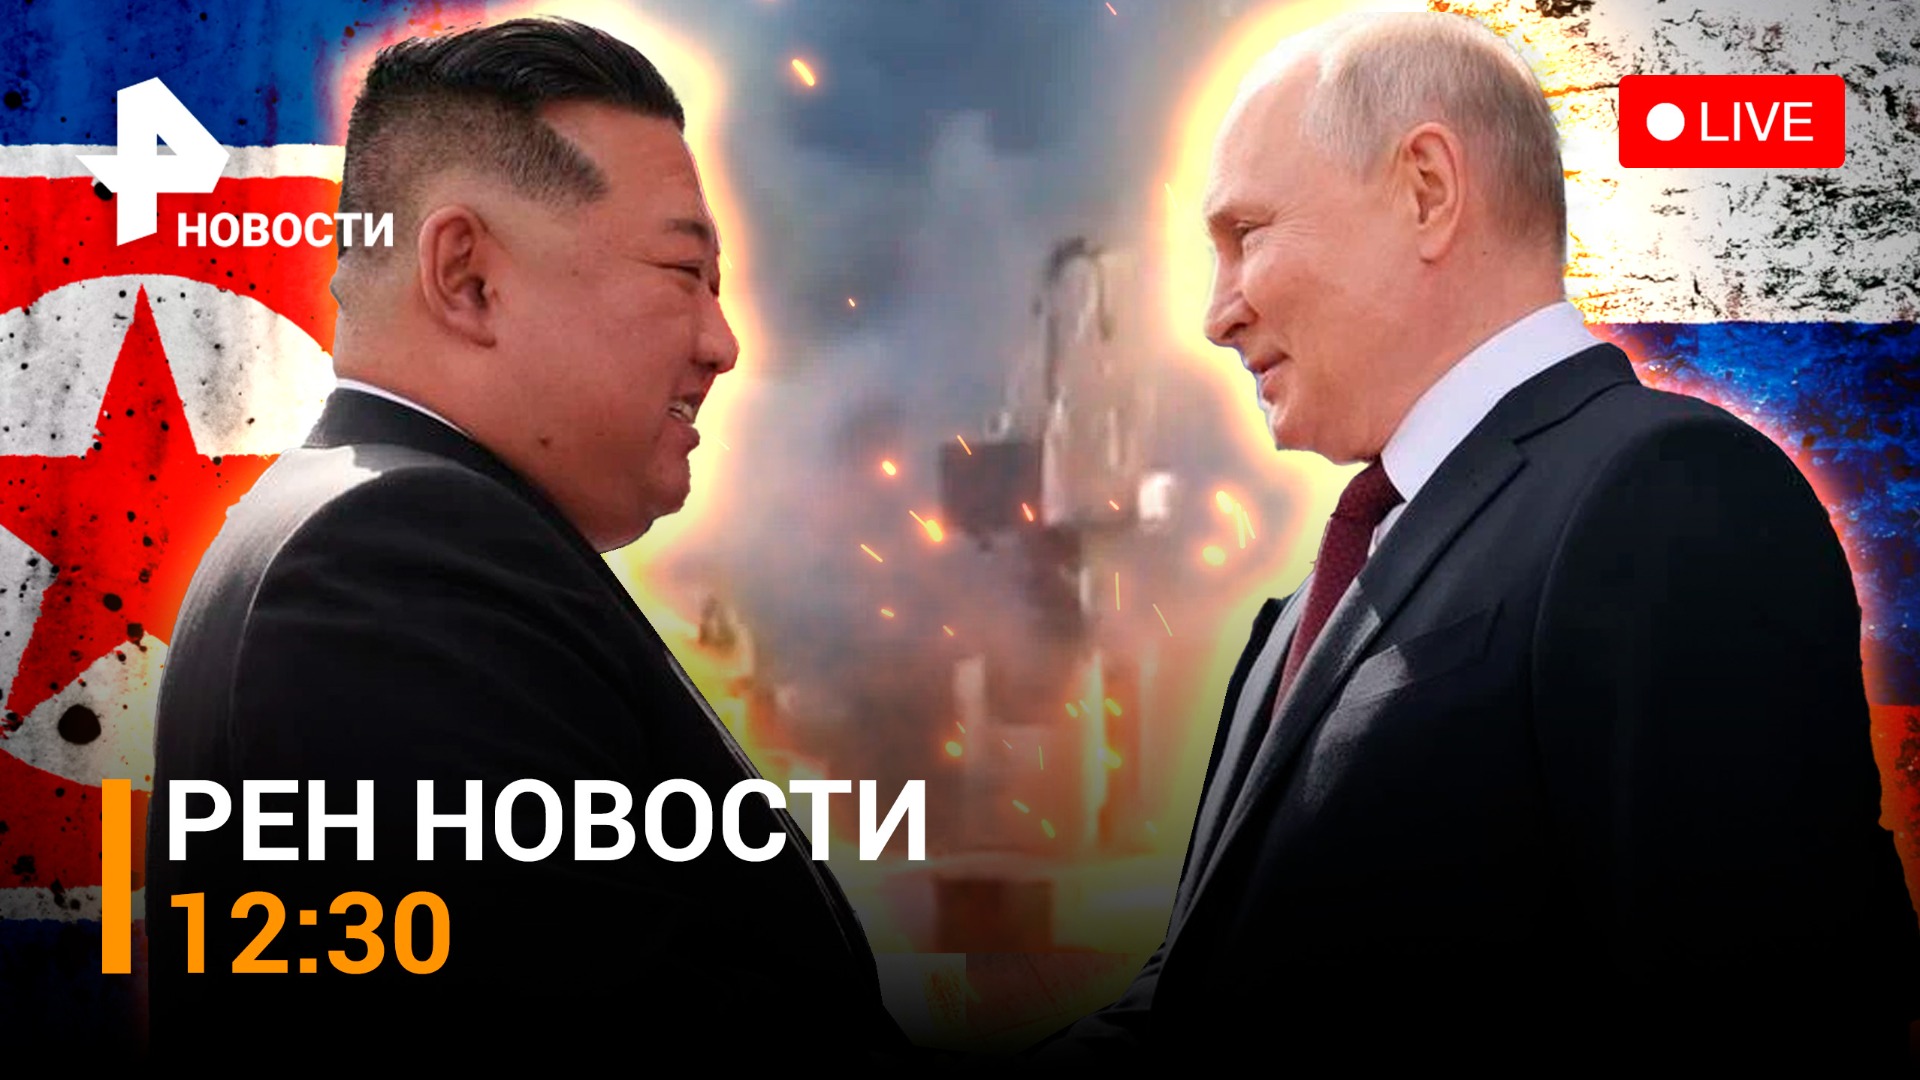 Встреча Путина и Ким Чен Ына. Удар по портам Одессы / РЕН Новости 13.09, 12:30